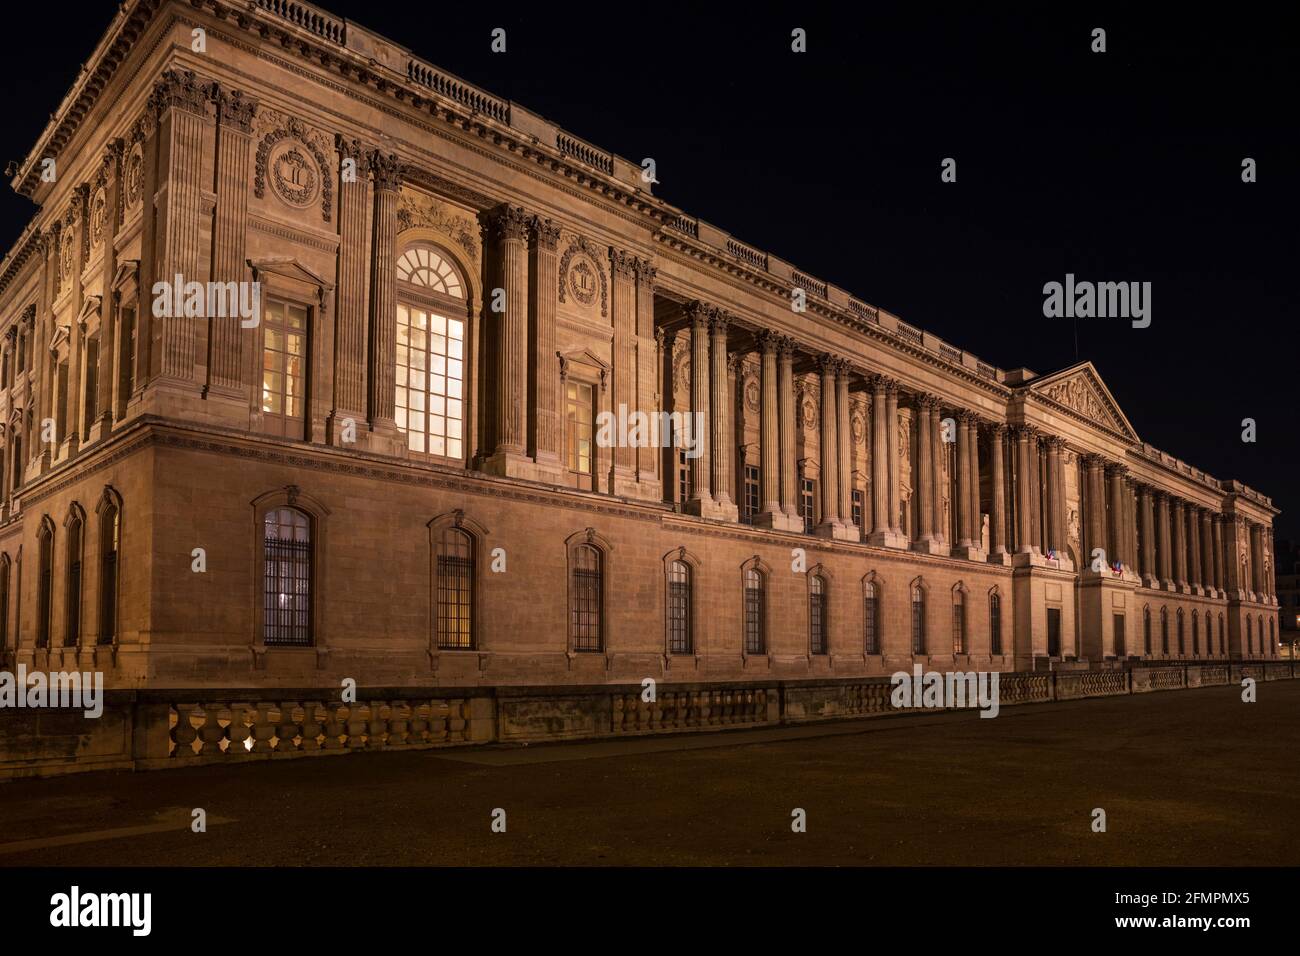 Le Louvre Colonnade / Colonnade de Perrault, Paris, France. Banque D'Images